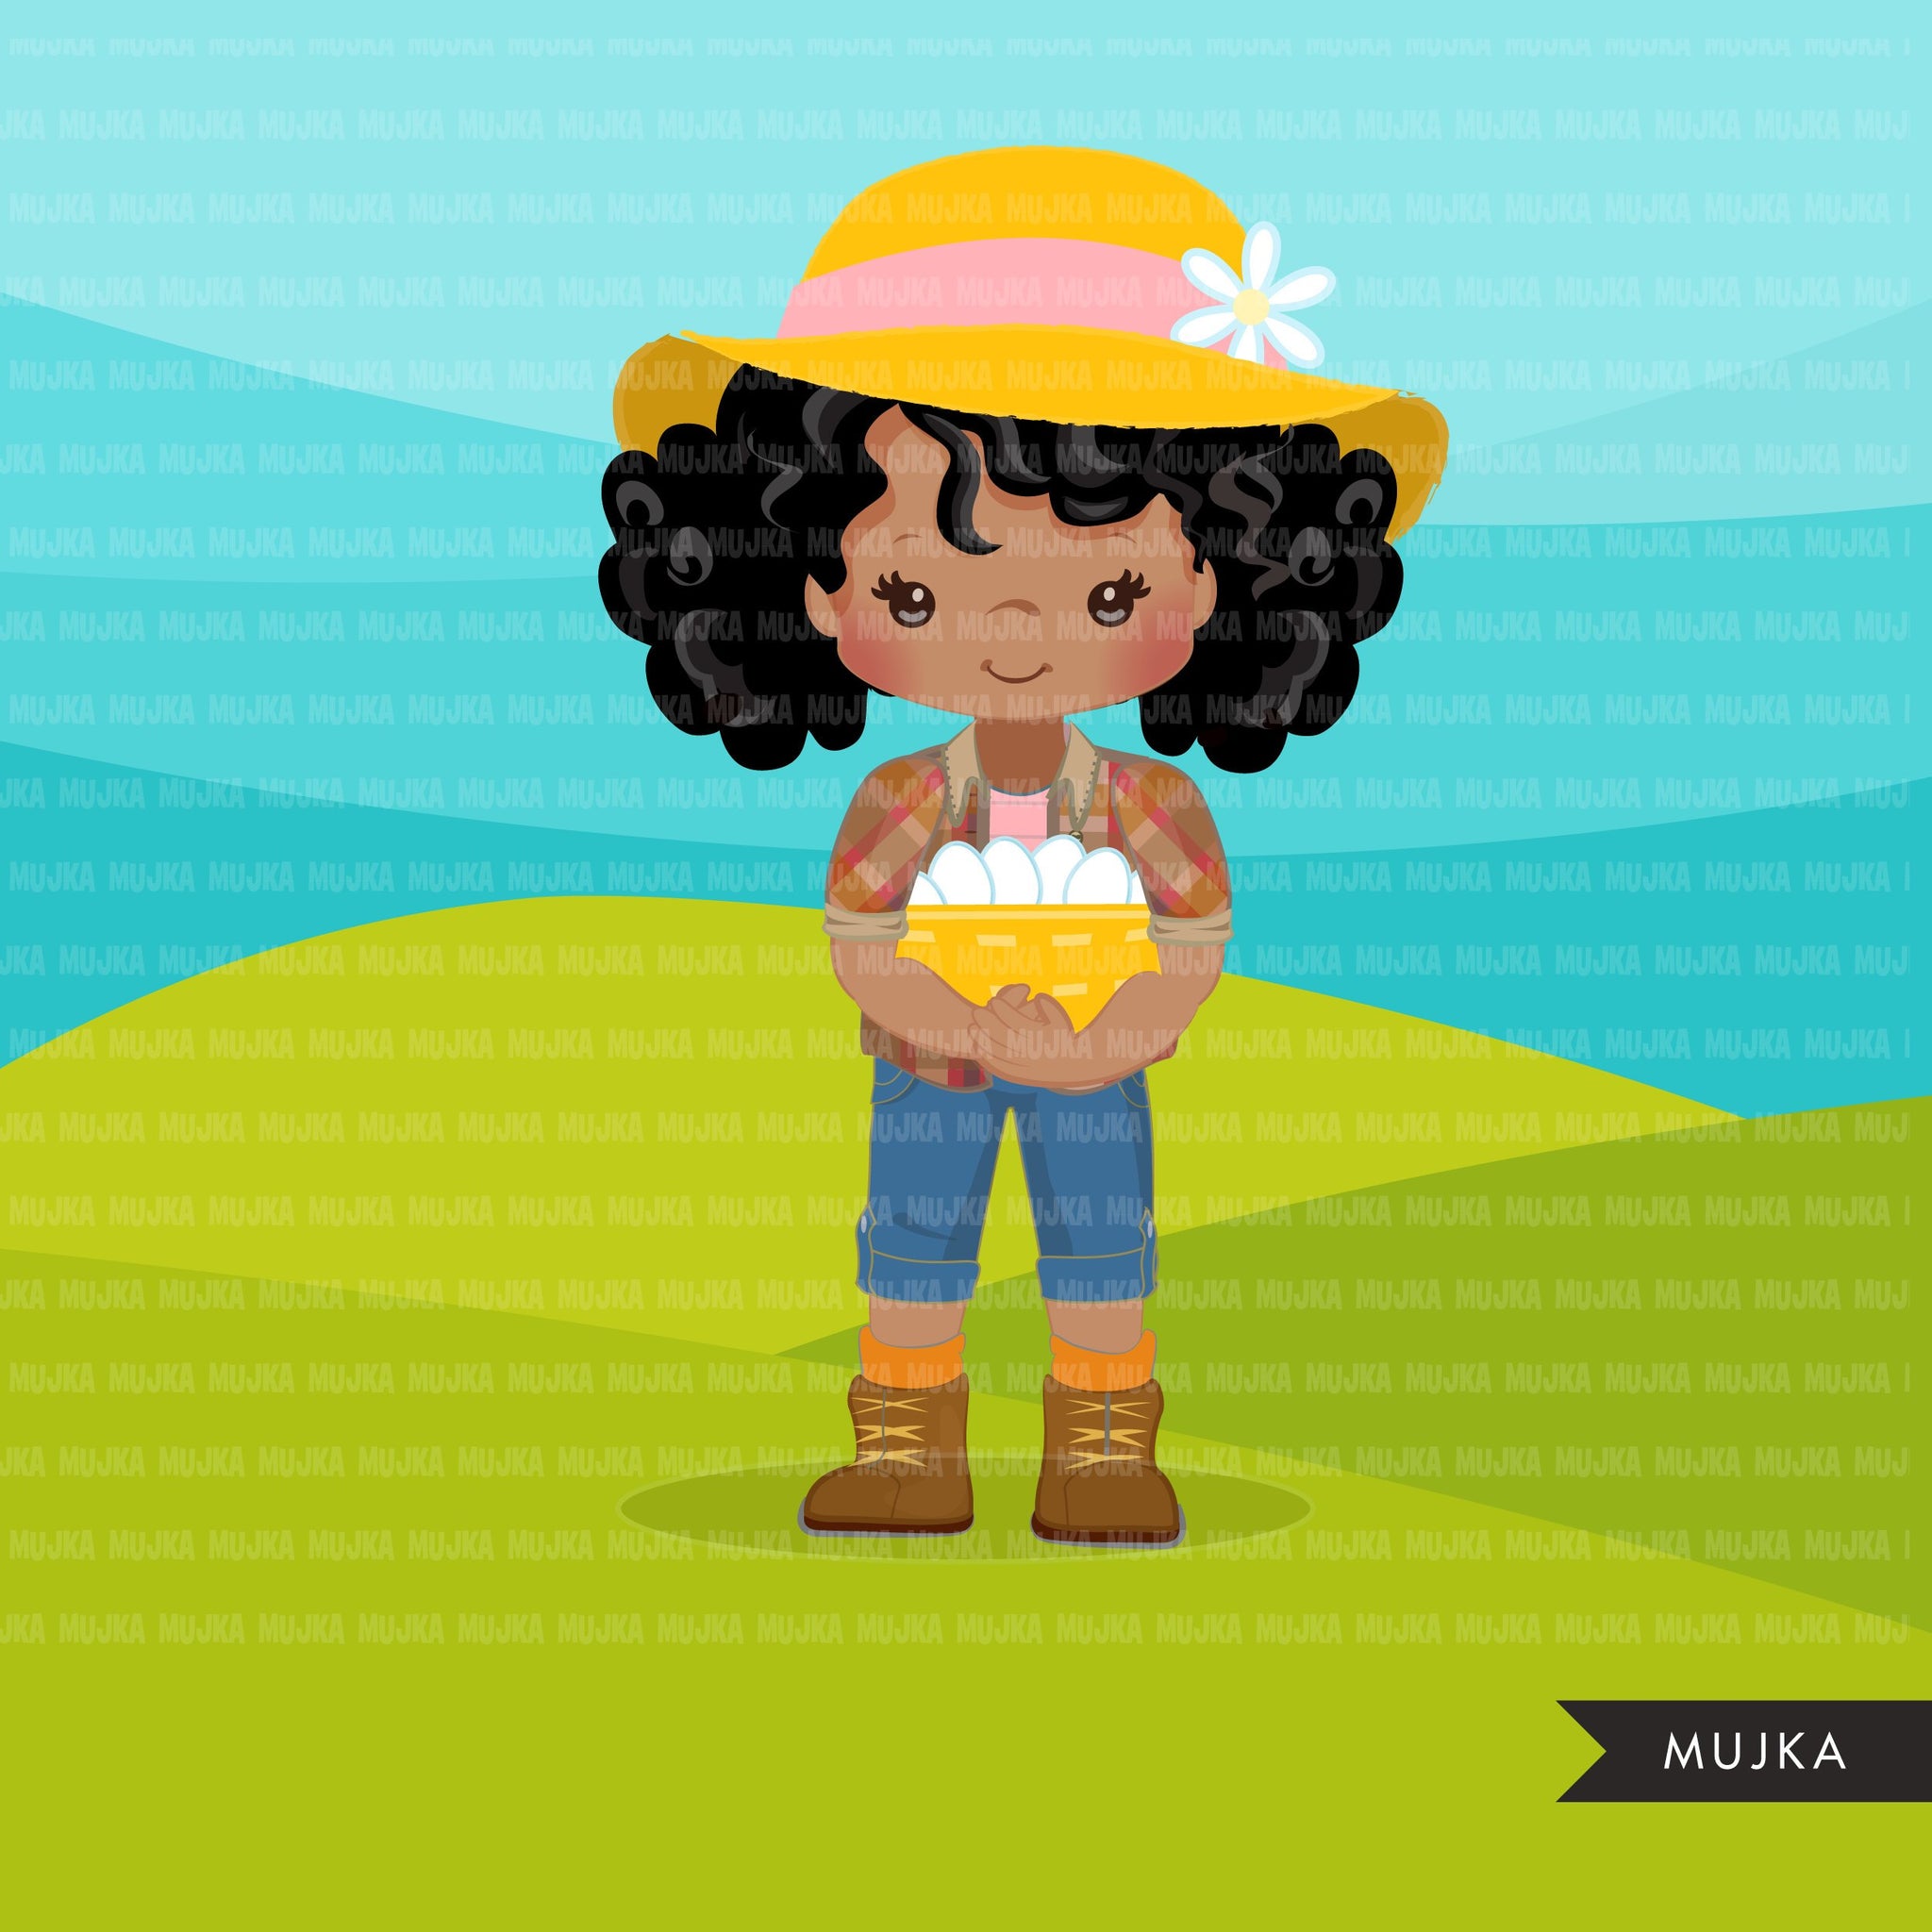 Clipart afro negro de Farmer Girls, personagens de fazendeiro com cesta de ovos, chapéu de fazendeiro, gráficos country, garota country com chapéu